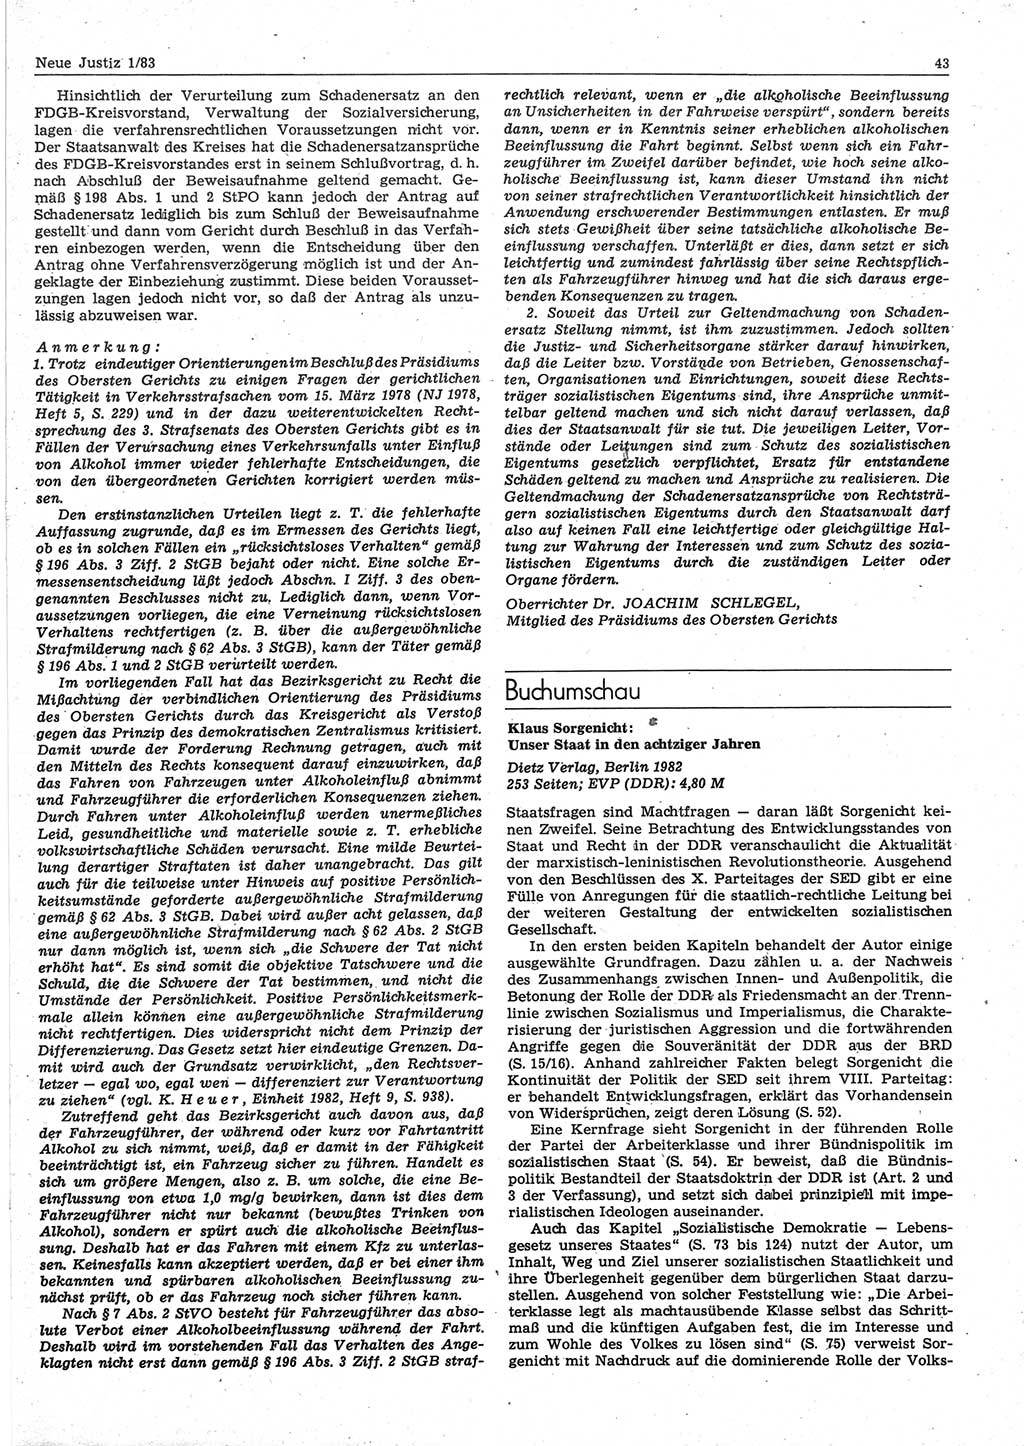 Neue Justiz (NJ), Zeitschrift für sozialistisches Recht und Gesetzlichkeit [Deutsche Demokratische Republik (DDR)], 37. Jahrgang 1983, Seite 43 (NJ DDR 1983, S. 43)